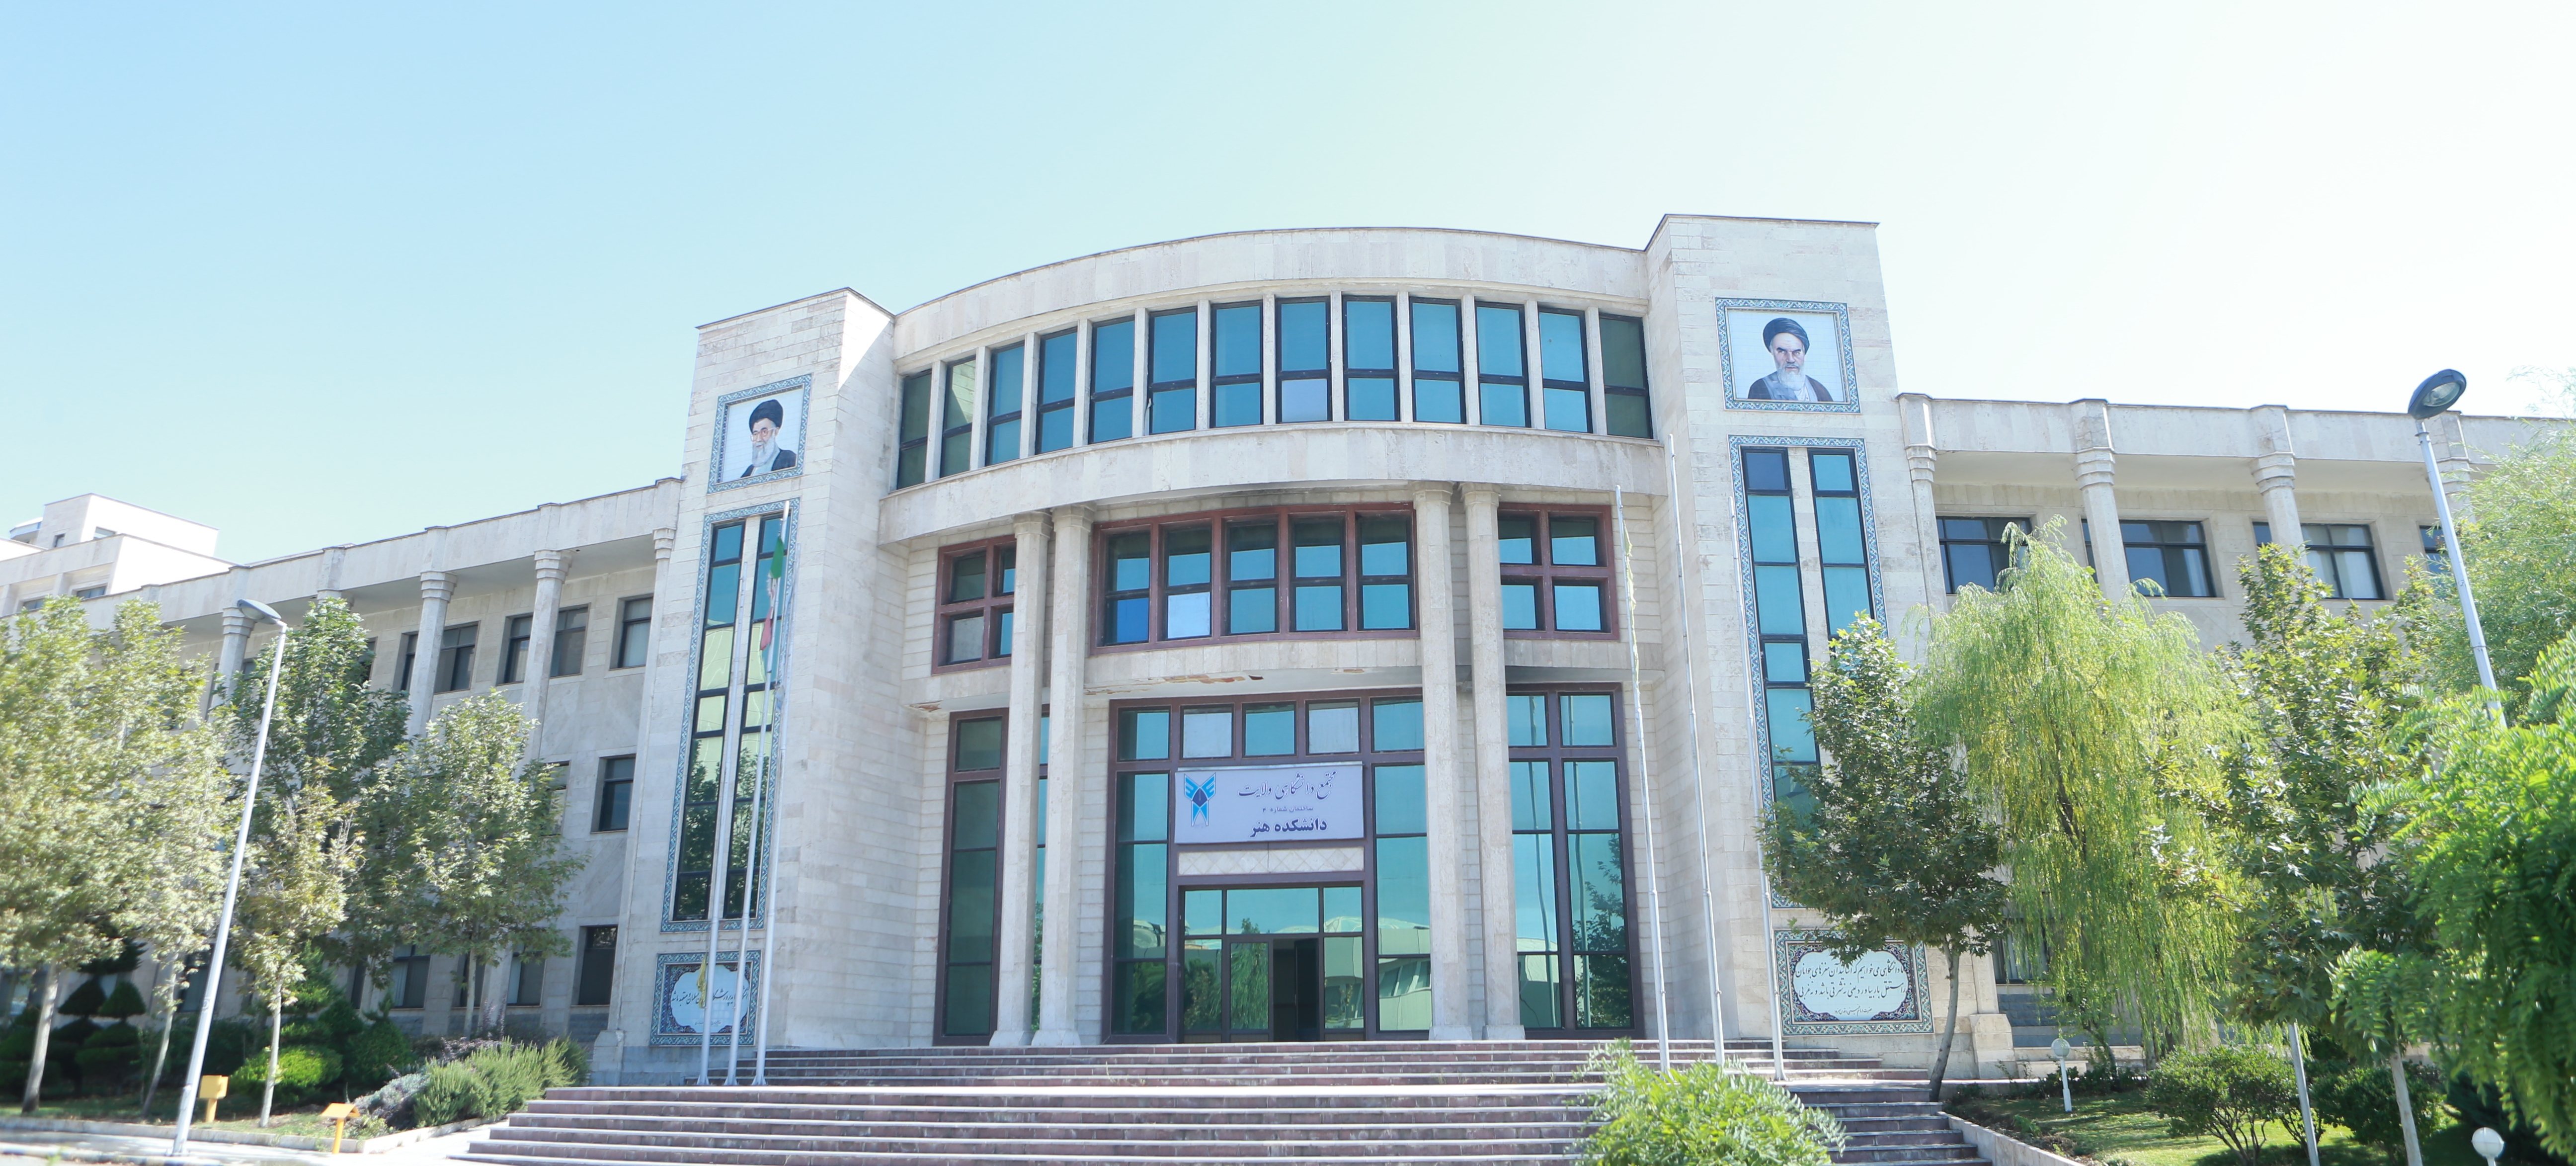 دانشکده روانشناسی دانشگاه تهران مرکز
